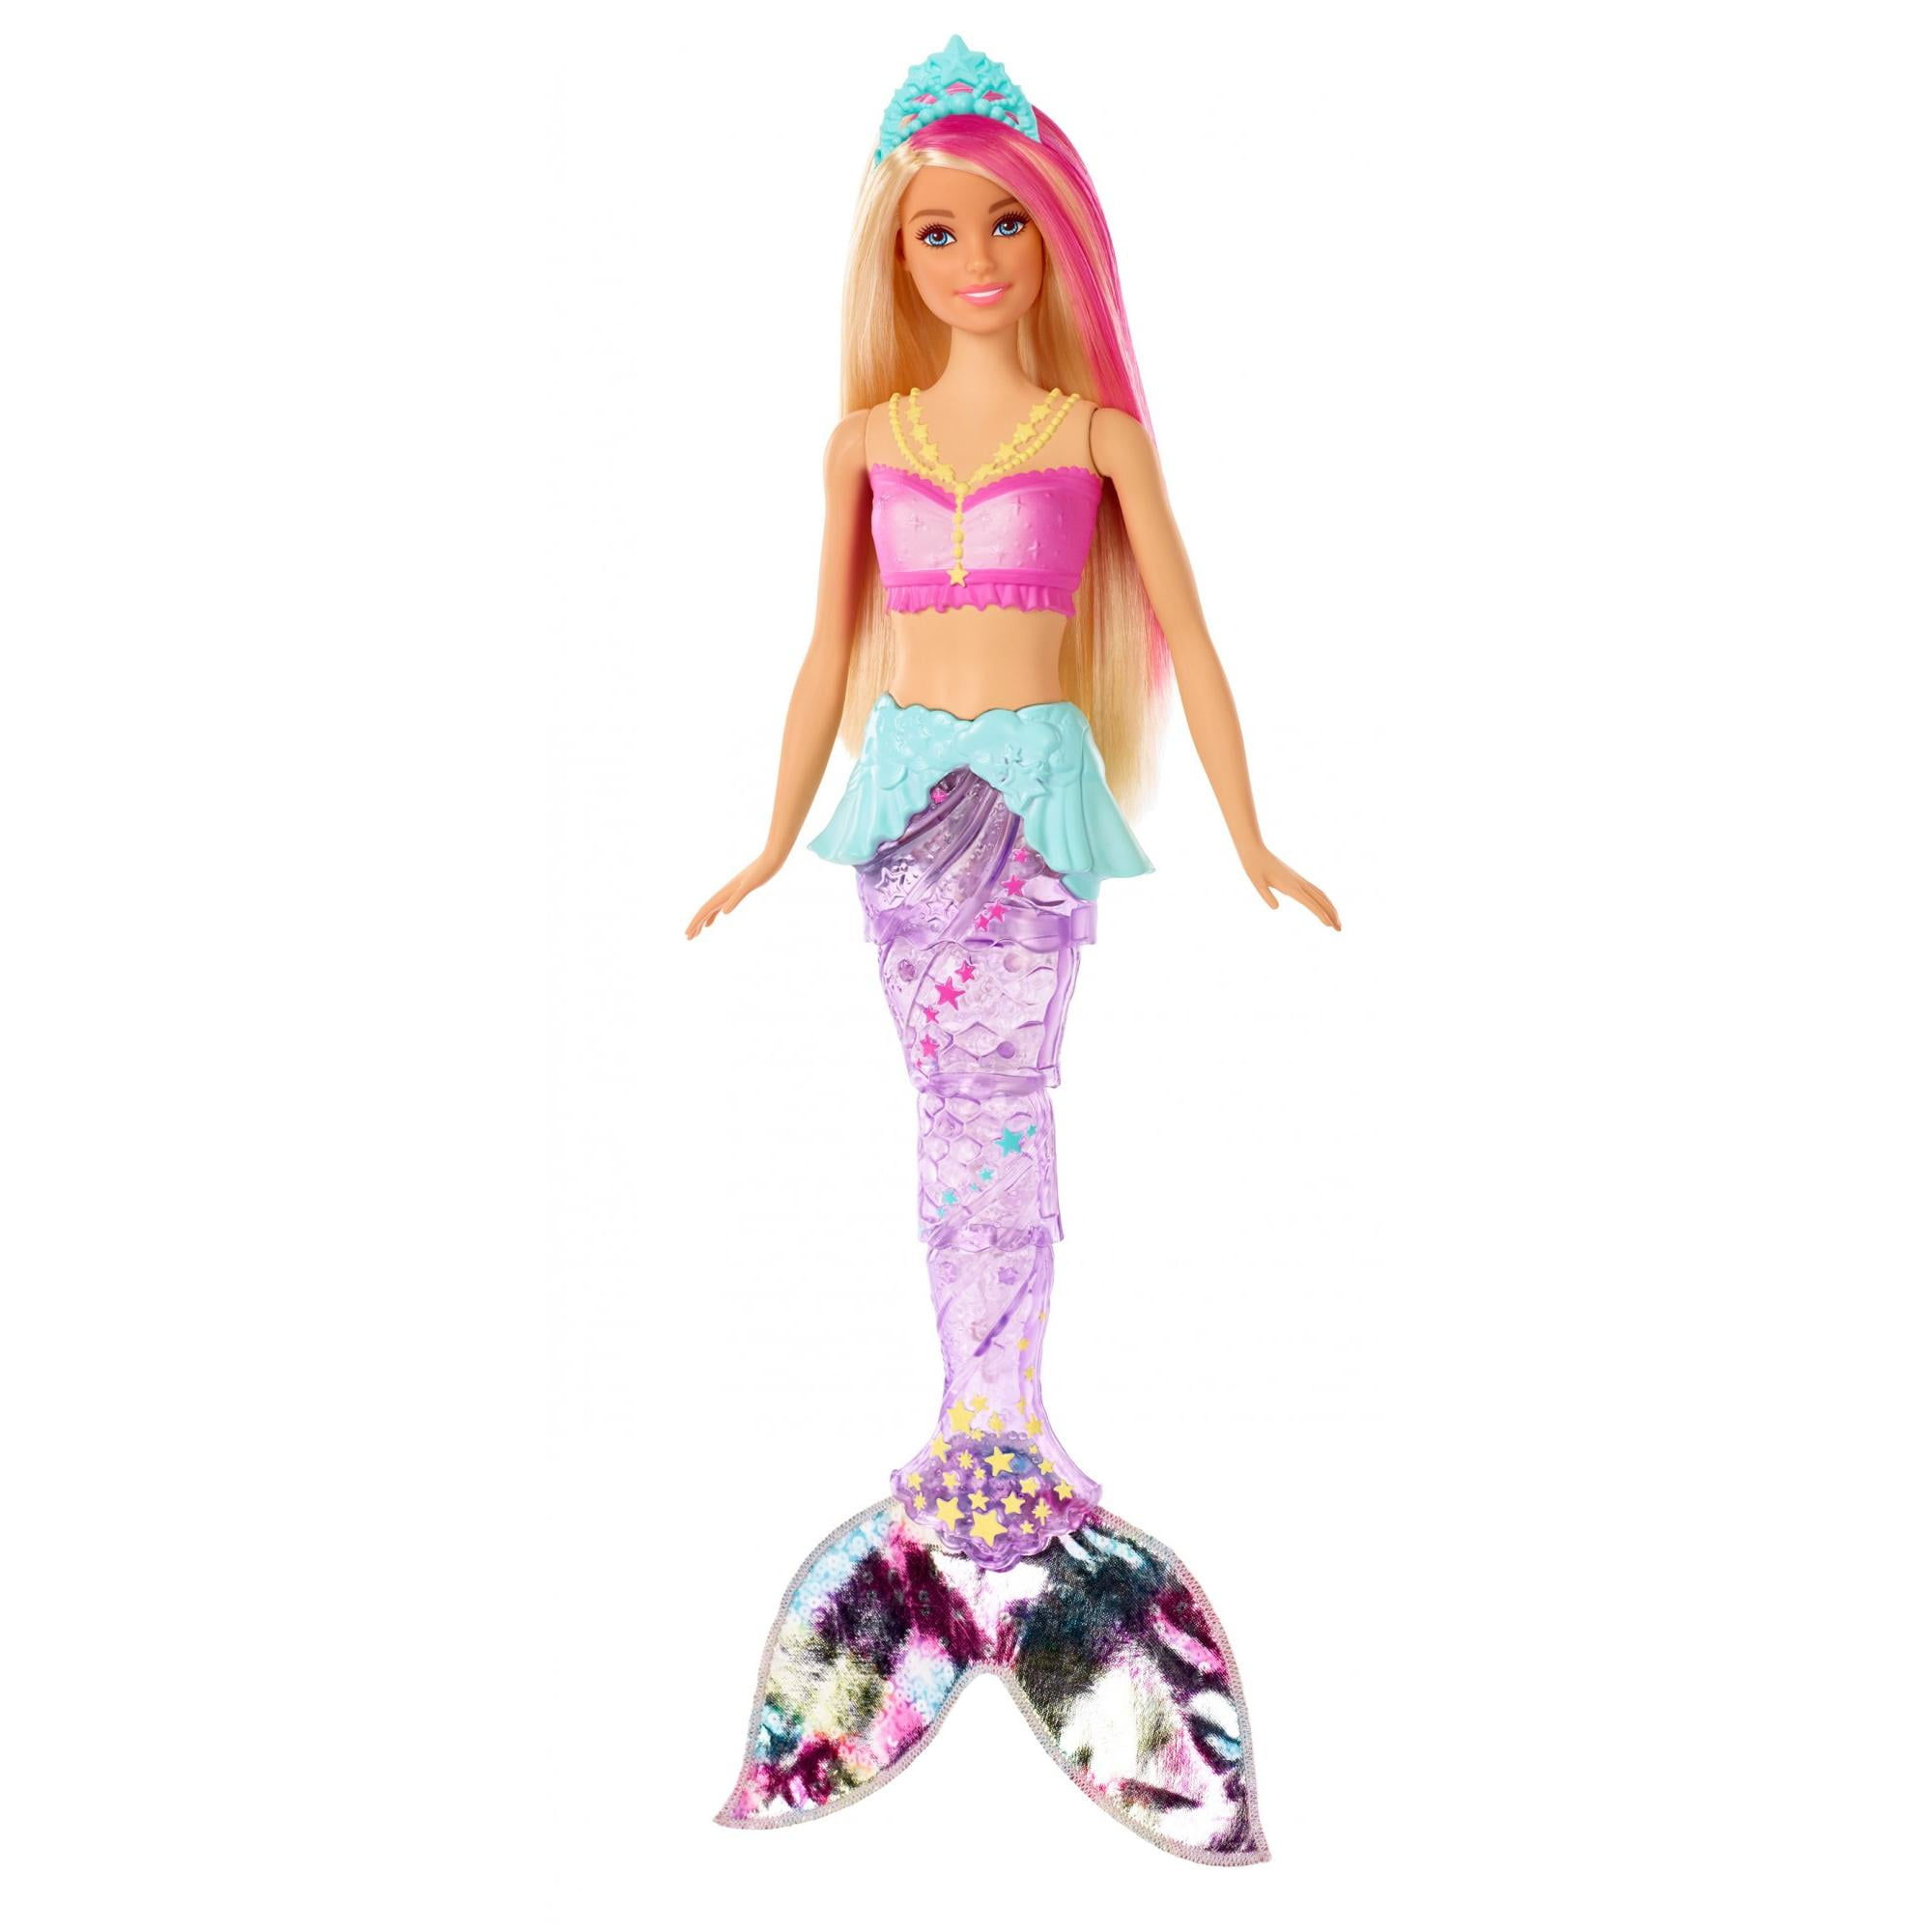 Barbie Dreamtopia Chelsea Mermaid Doll, 6.5-Inch With Teal Hair 